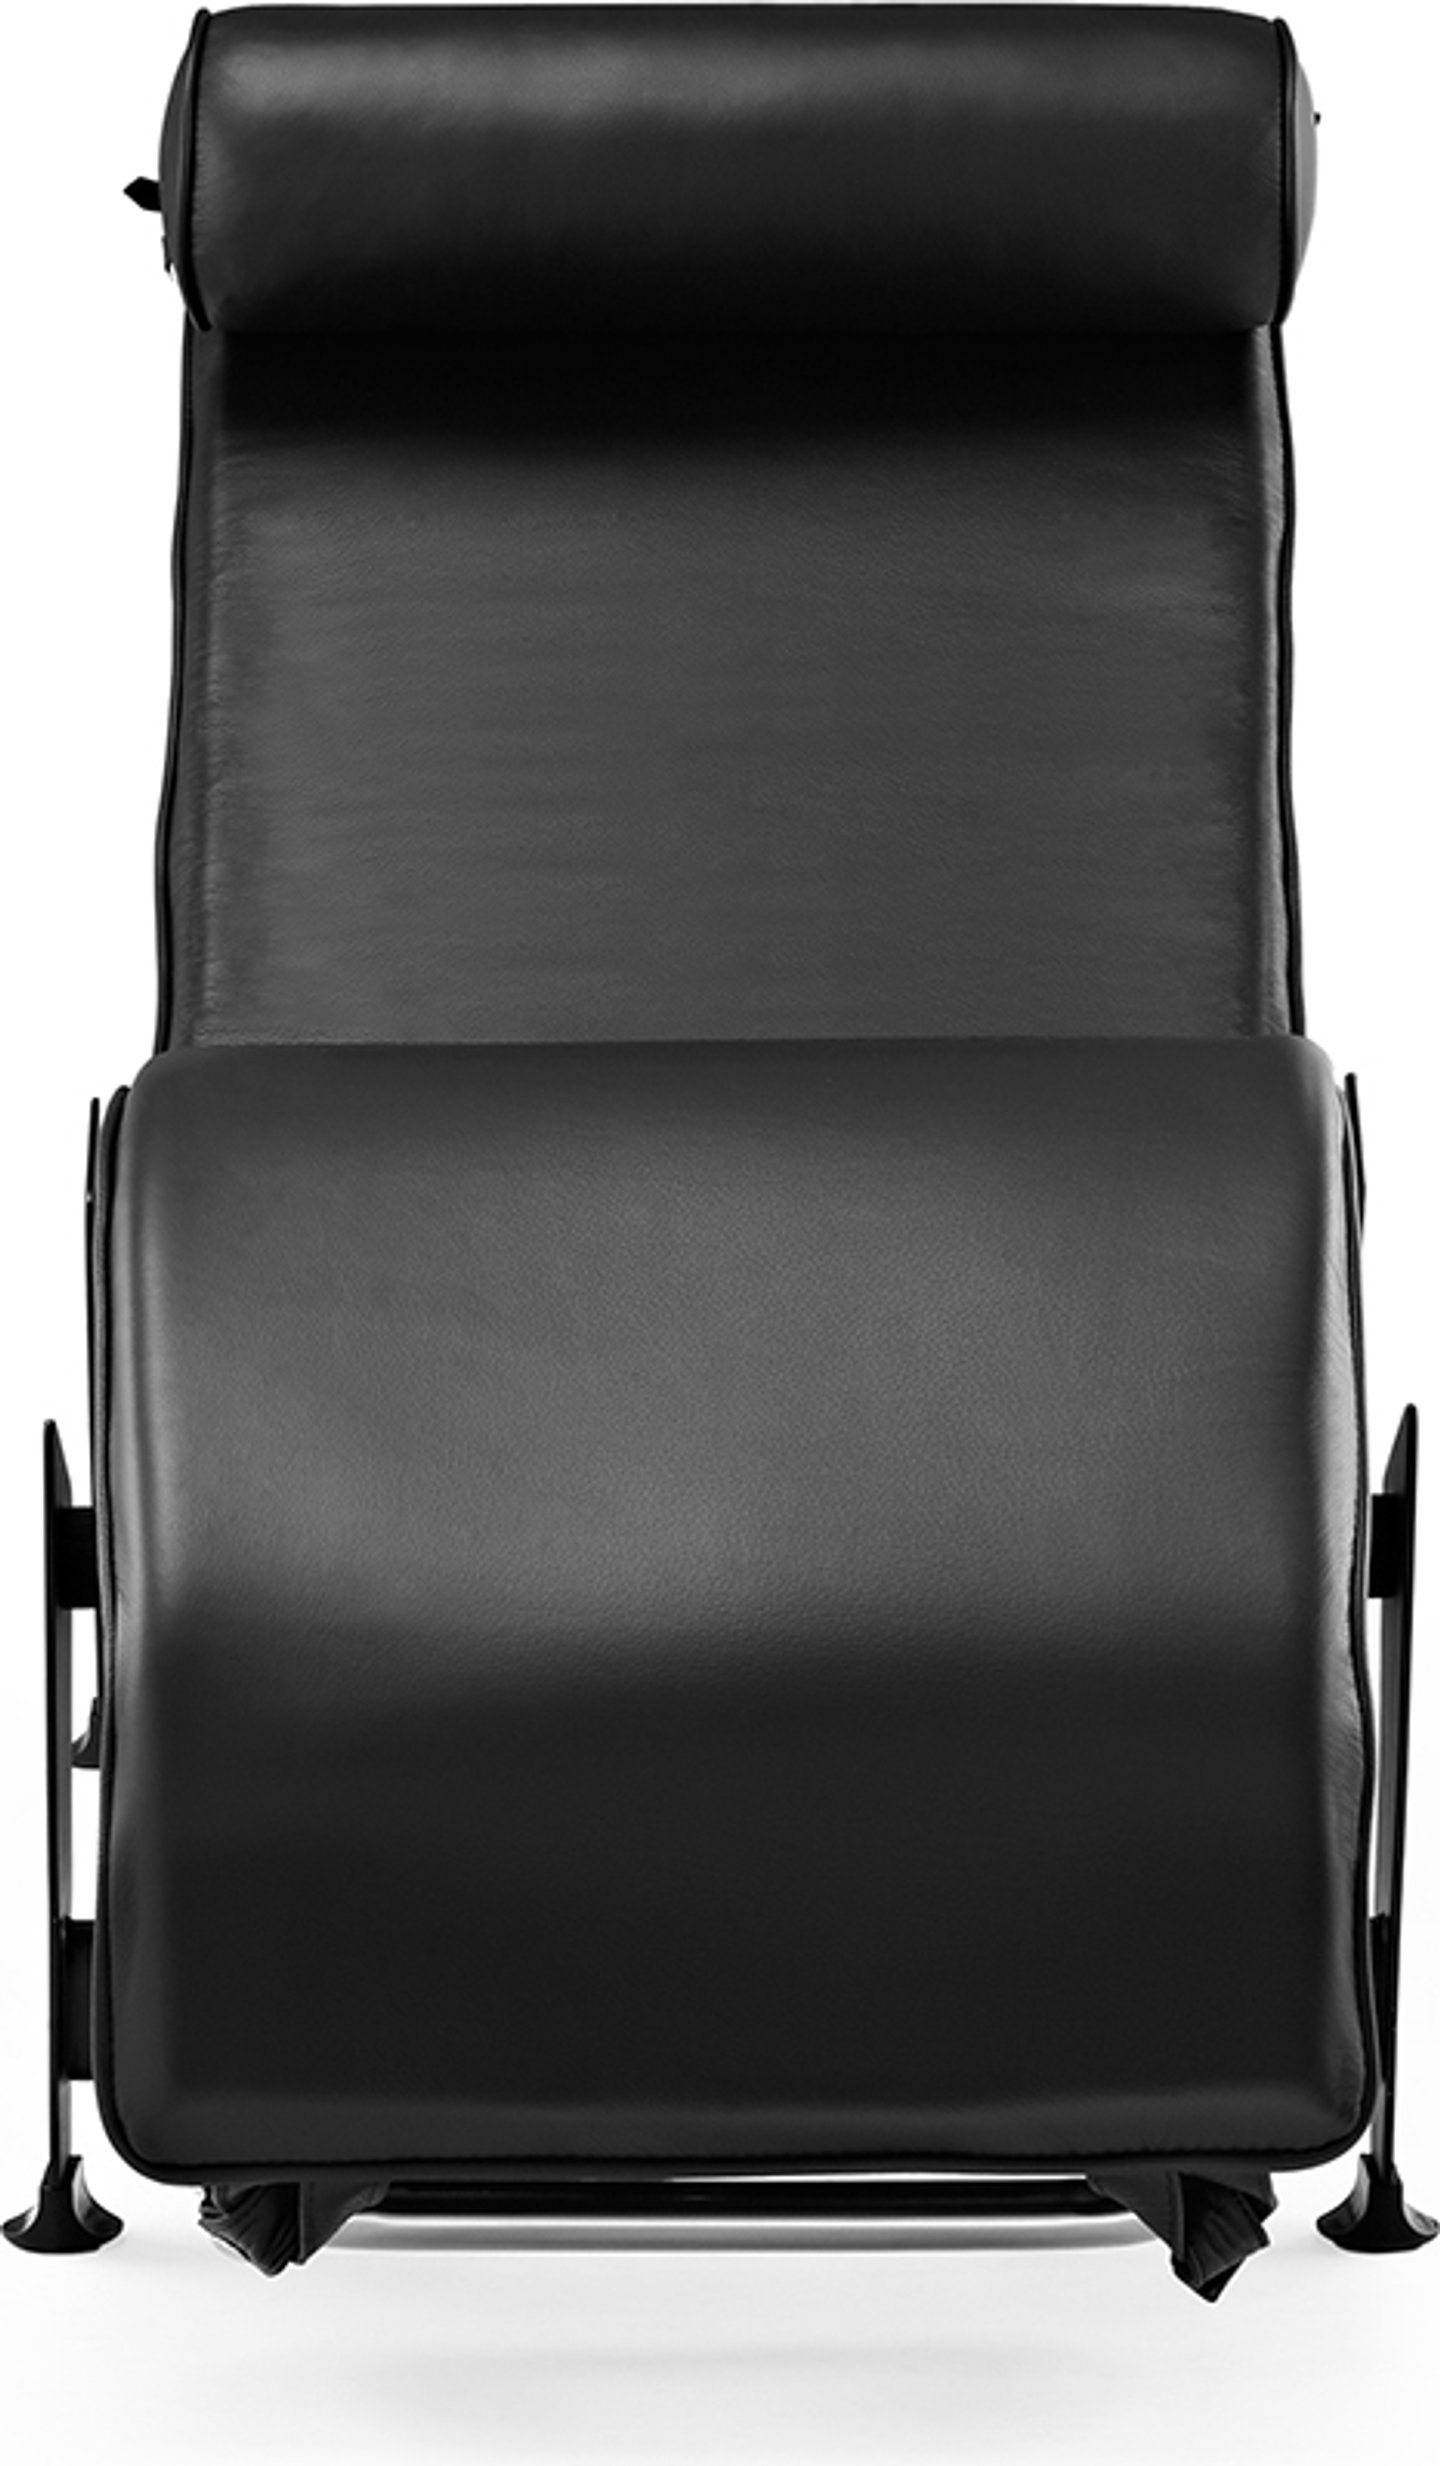 LC4 Stijl Chaise Longue Premium Leather/Black image.